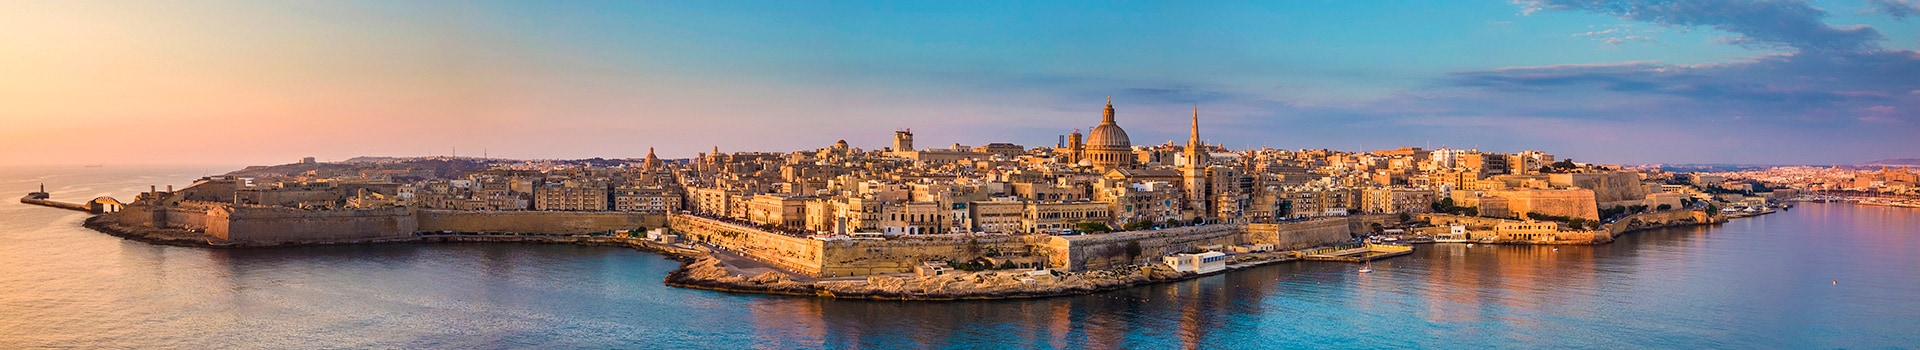 Pariisi - Malta